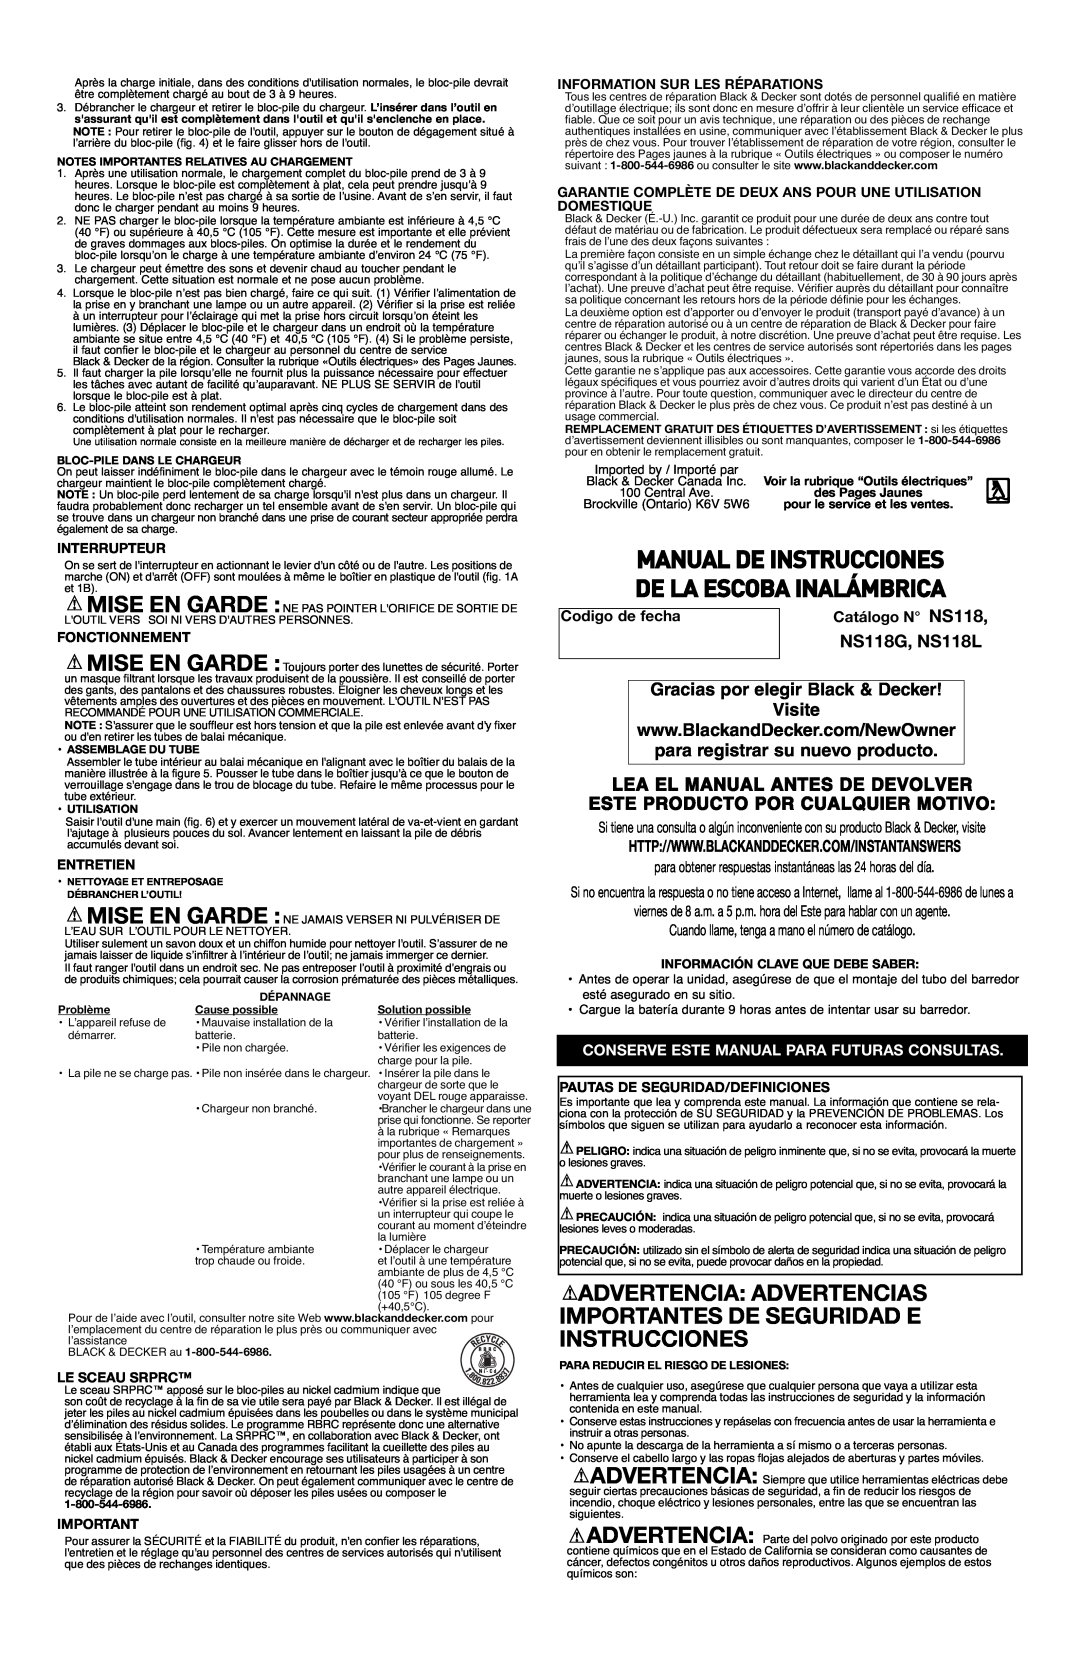 Black & Decker Manual De Instrucciones De La Escoba Inalámbrica, NS118G, NS118L, Este Producto Por Cualquier Motivo 